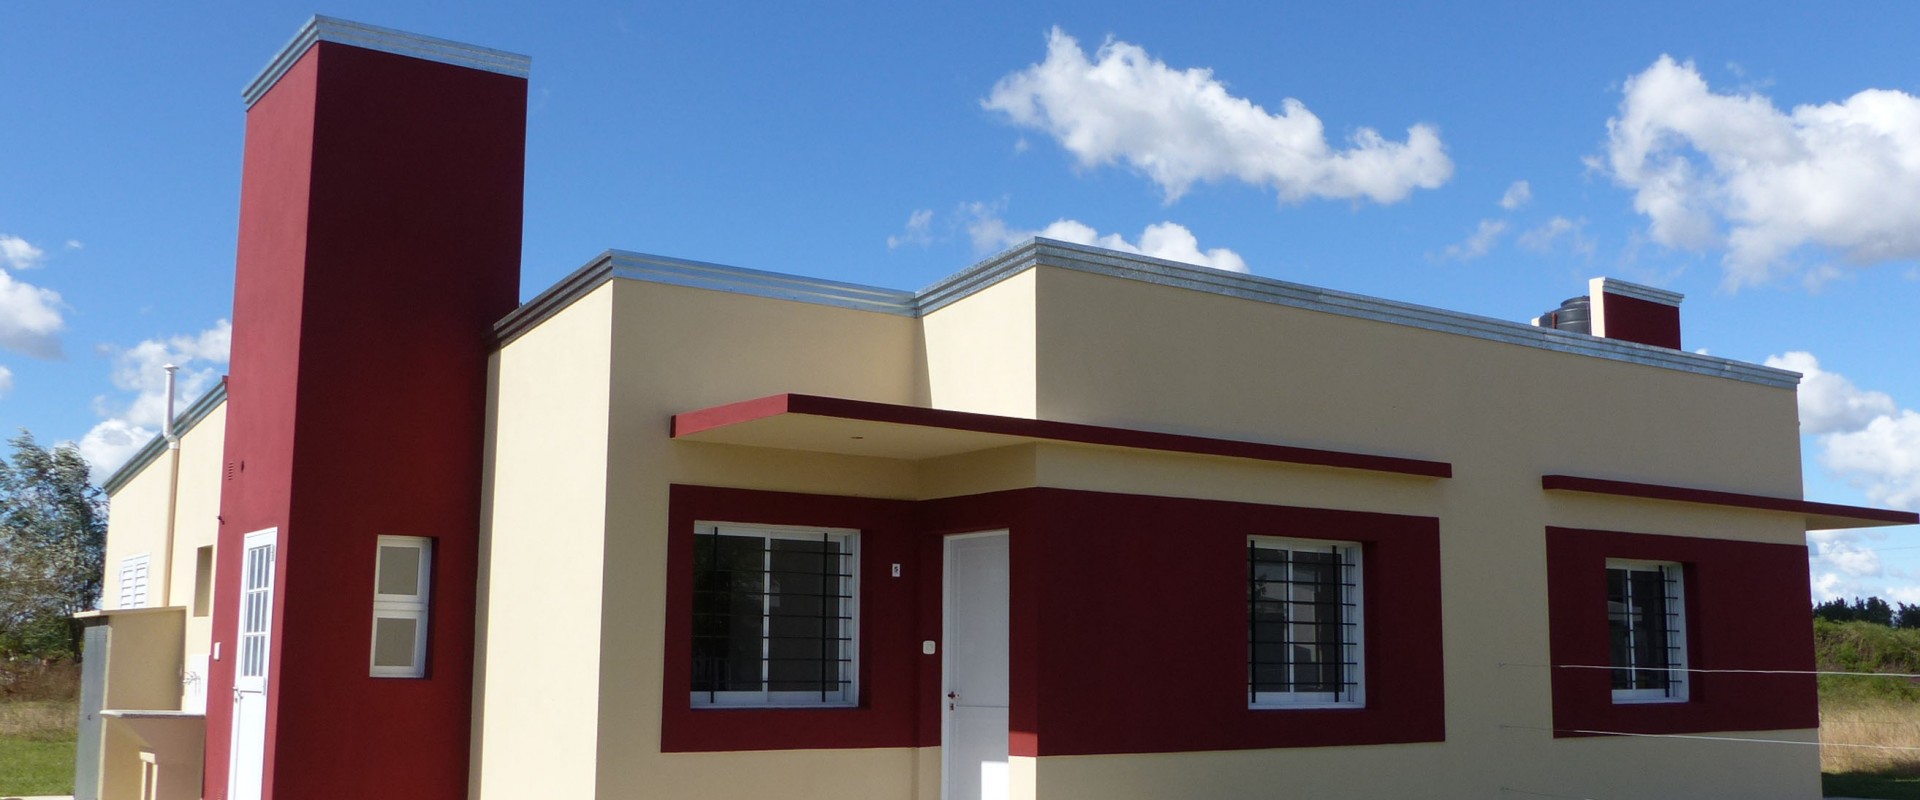 El gobierno sorteará 10 viviendas que tiene en ejecución en Herrera